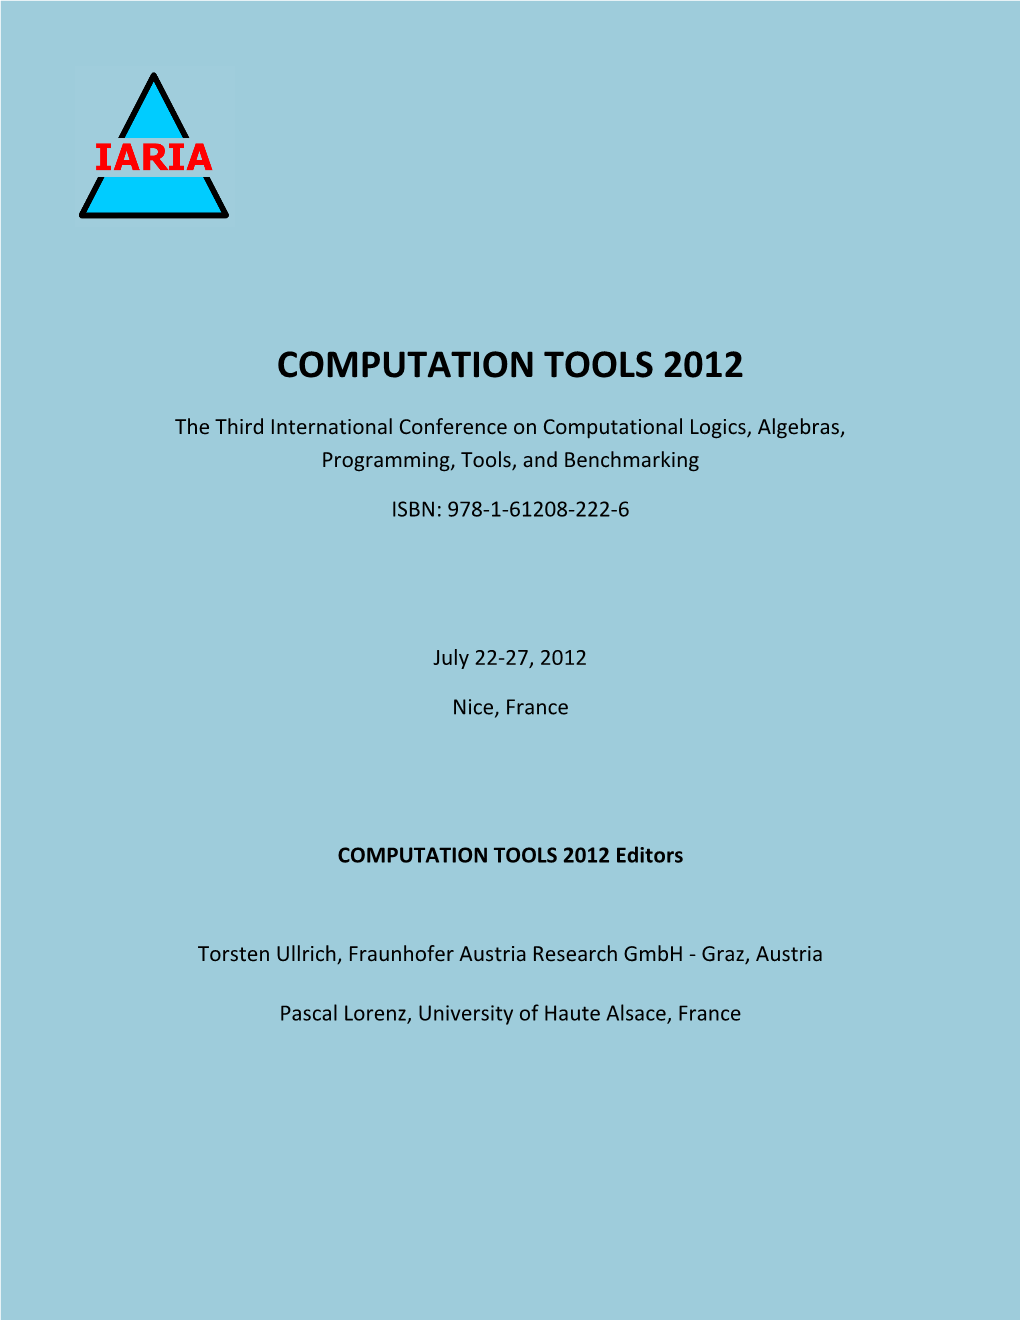 COMPUTATION TOOLS 2012 Proceedings